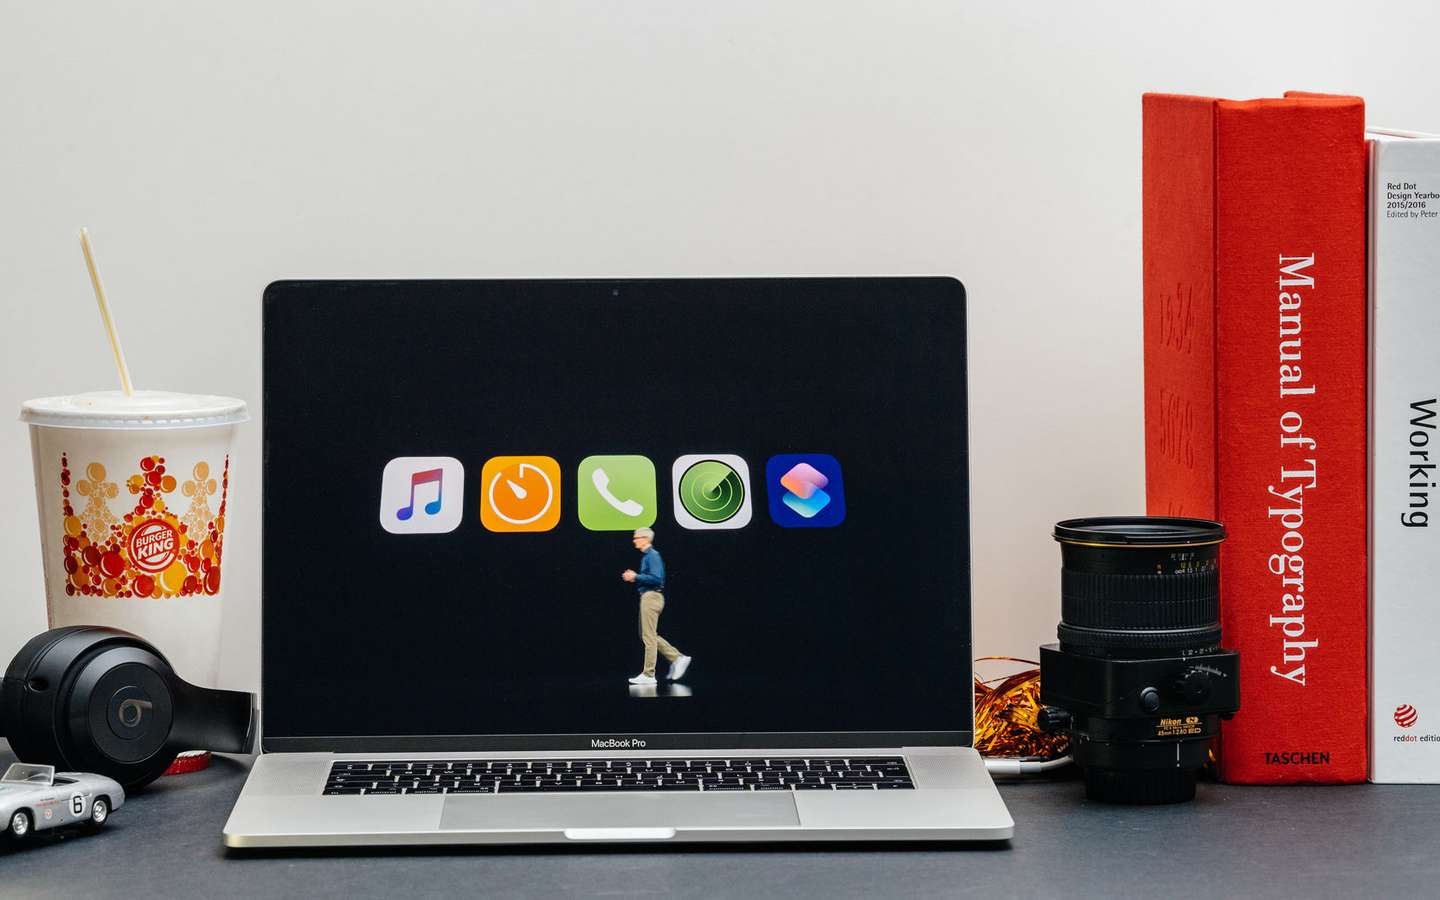 Qu'est-ce qui rend votre écran professionnel compatible avec Mac ?